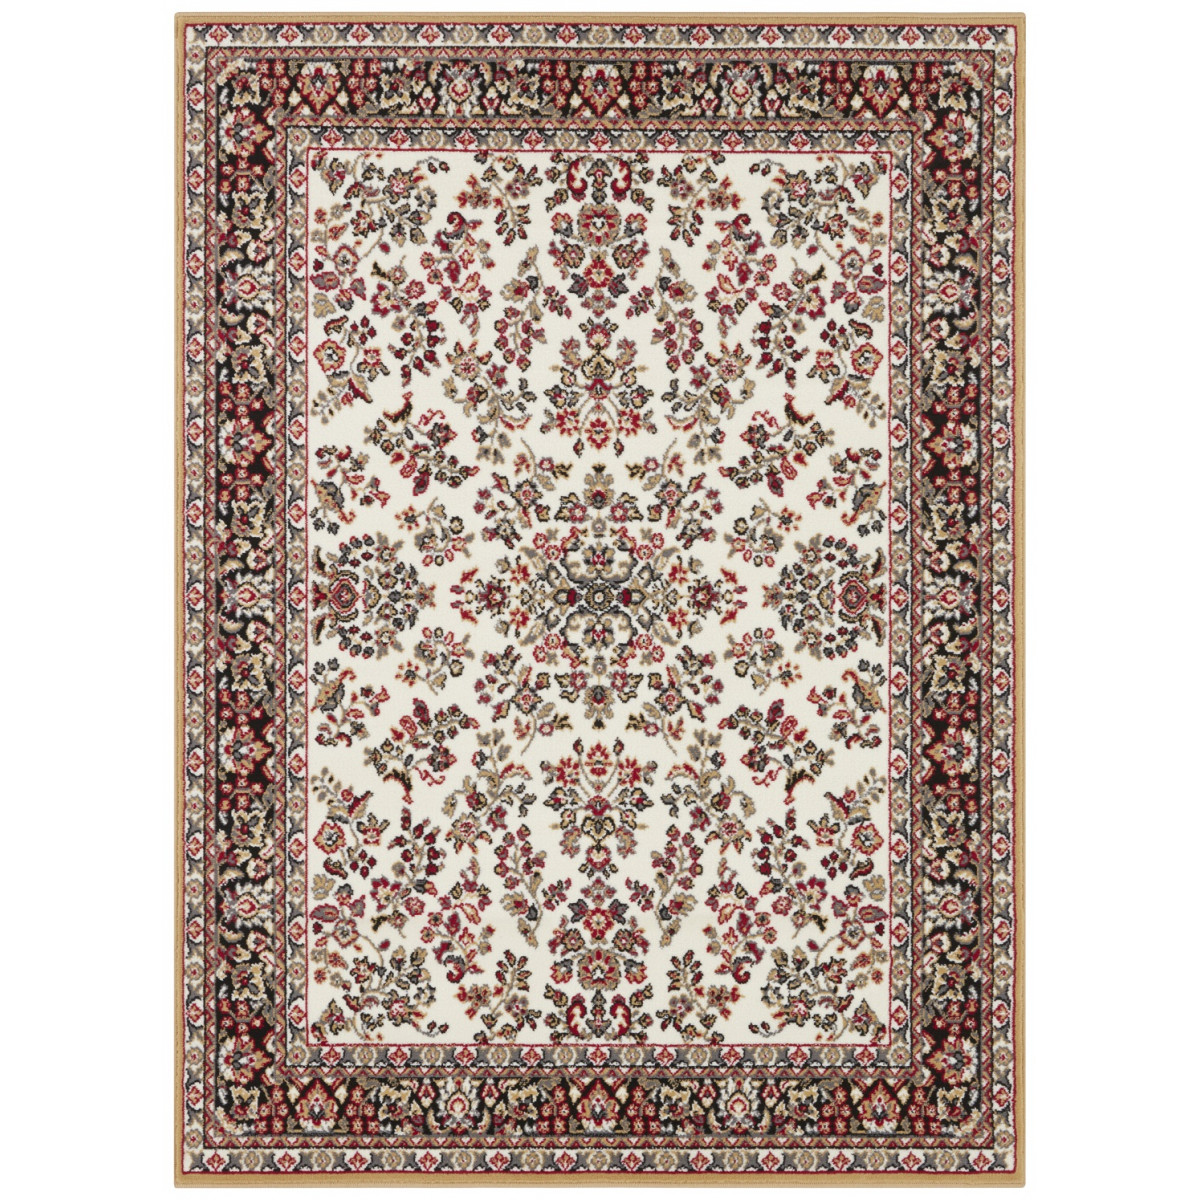 AKCE: 80x150 cm Kusový orientální koberec Mujkoberec Original 104349